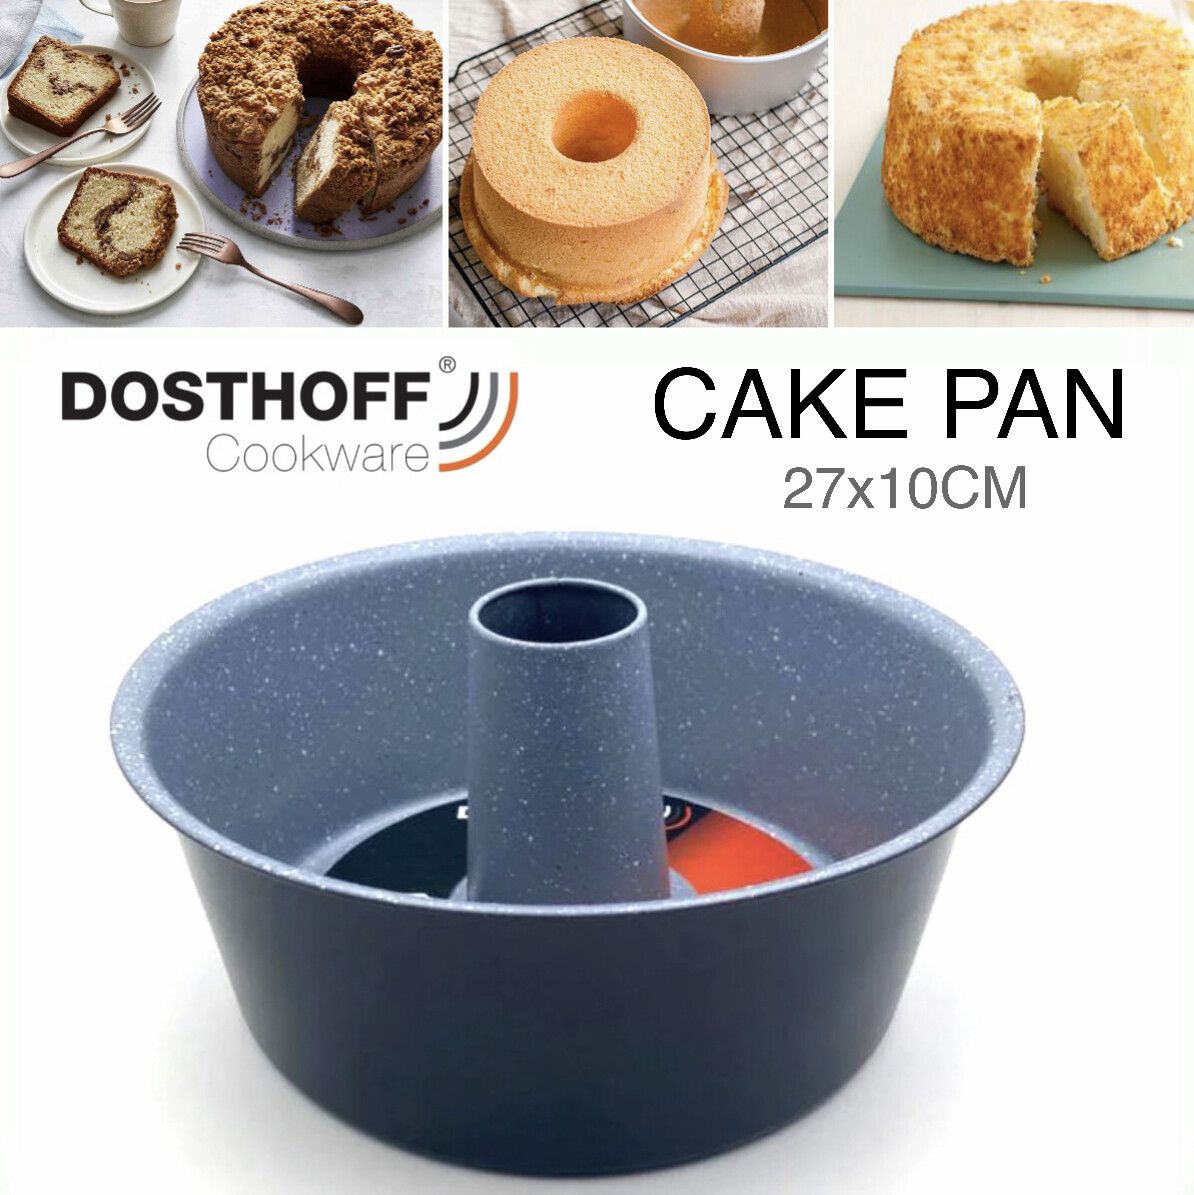 DOSTHOFF Cake Pan